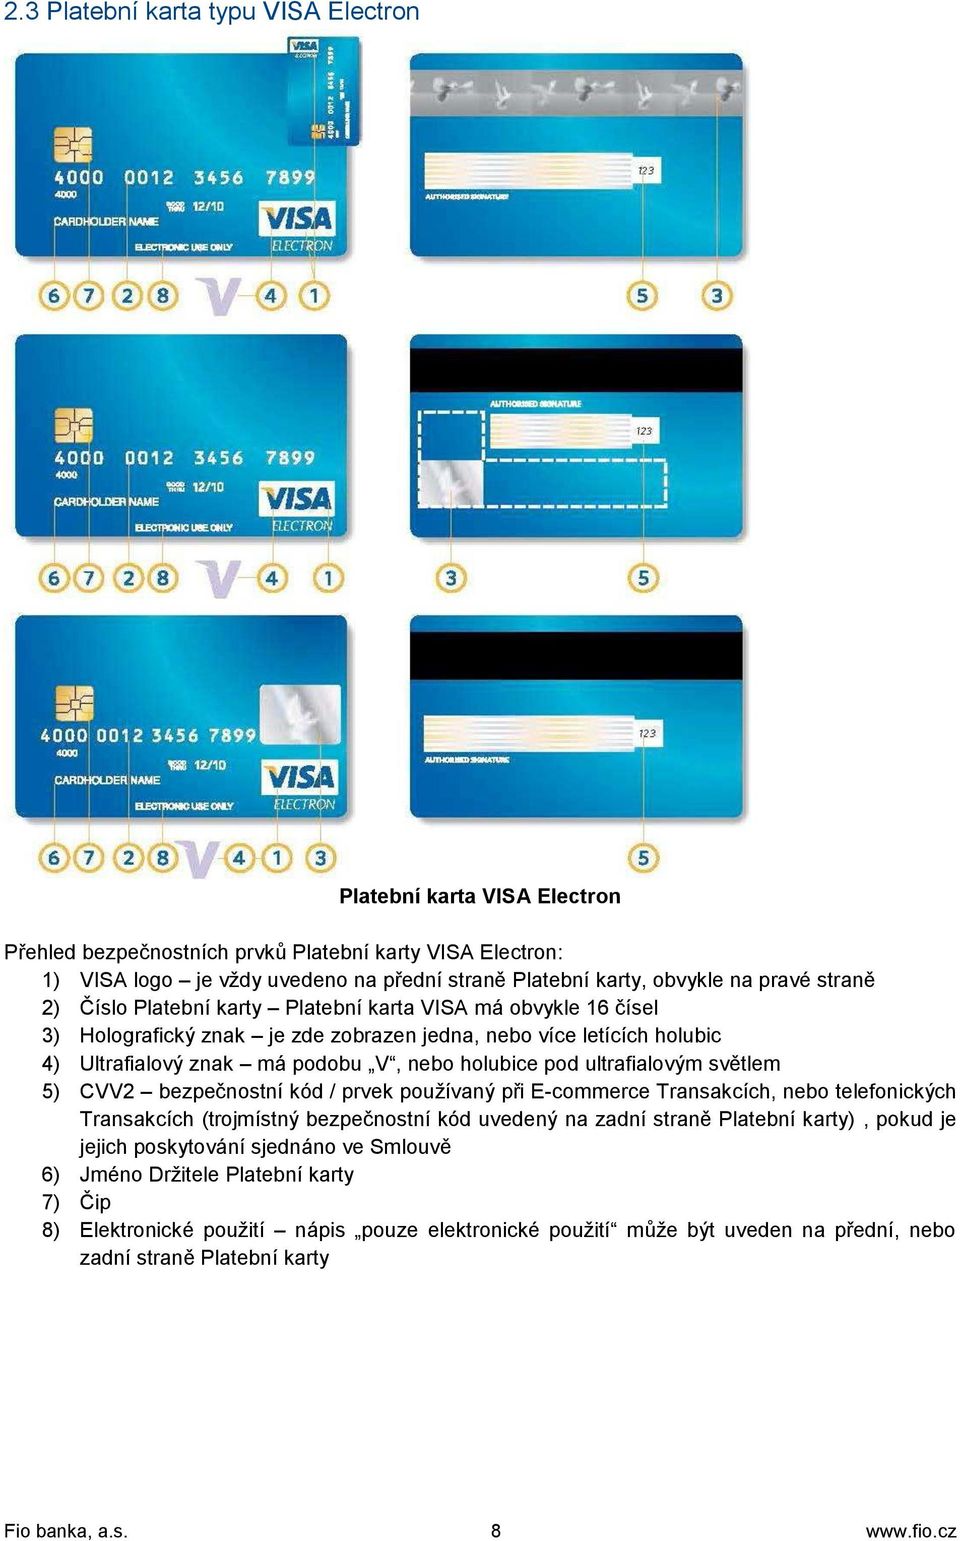 ultrafialovým světlem 5) CVV2 bezpečnostní kód / prvek používaný při E-commerce Transakcích, nebo telefonických Transakcích (trojmístný bezpečnostní kód uvedený na zadní straně Platební karty), pokud